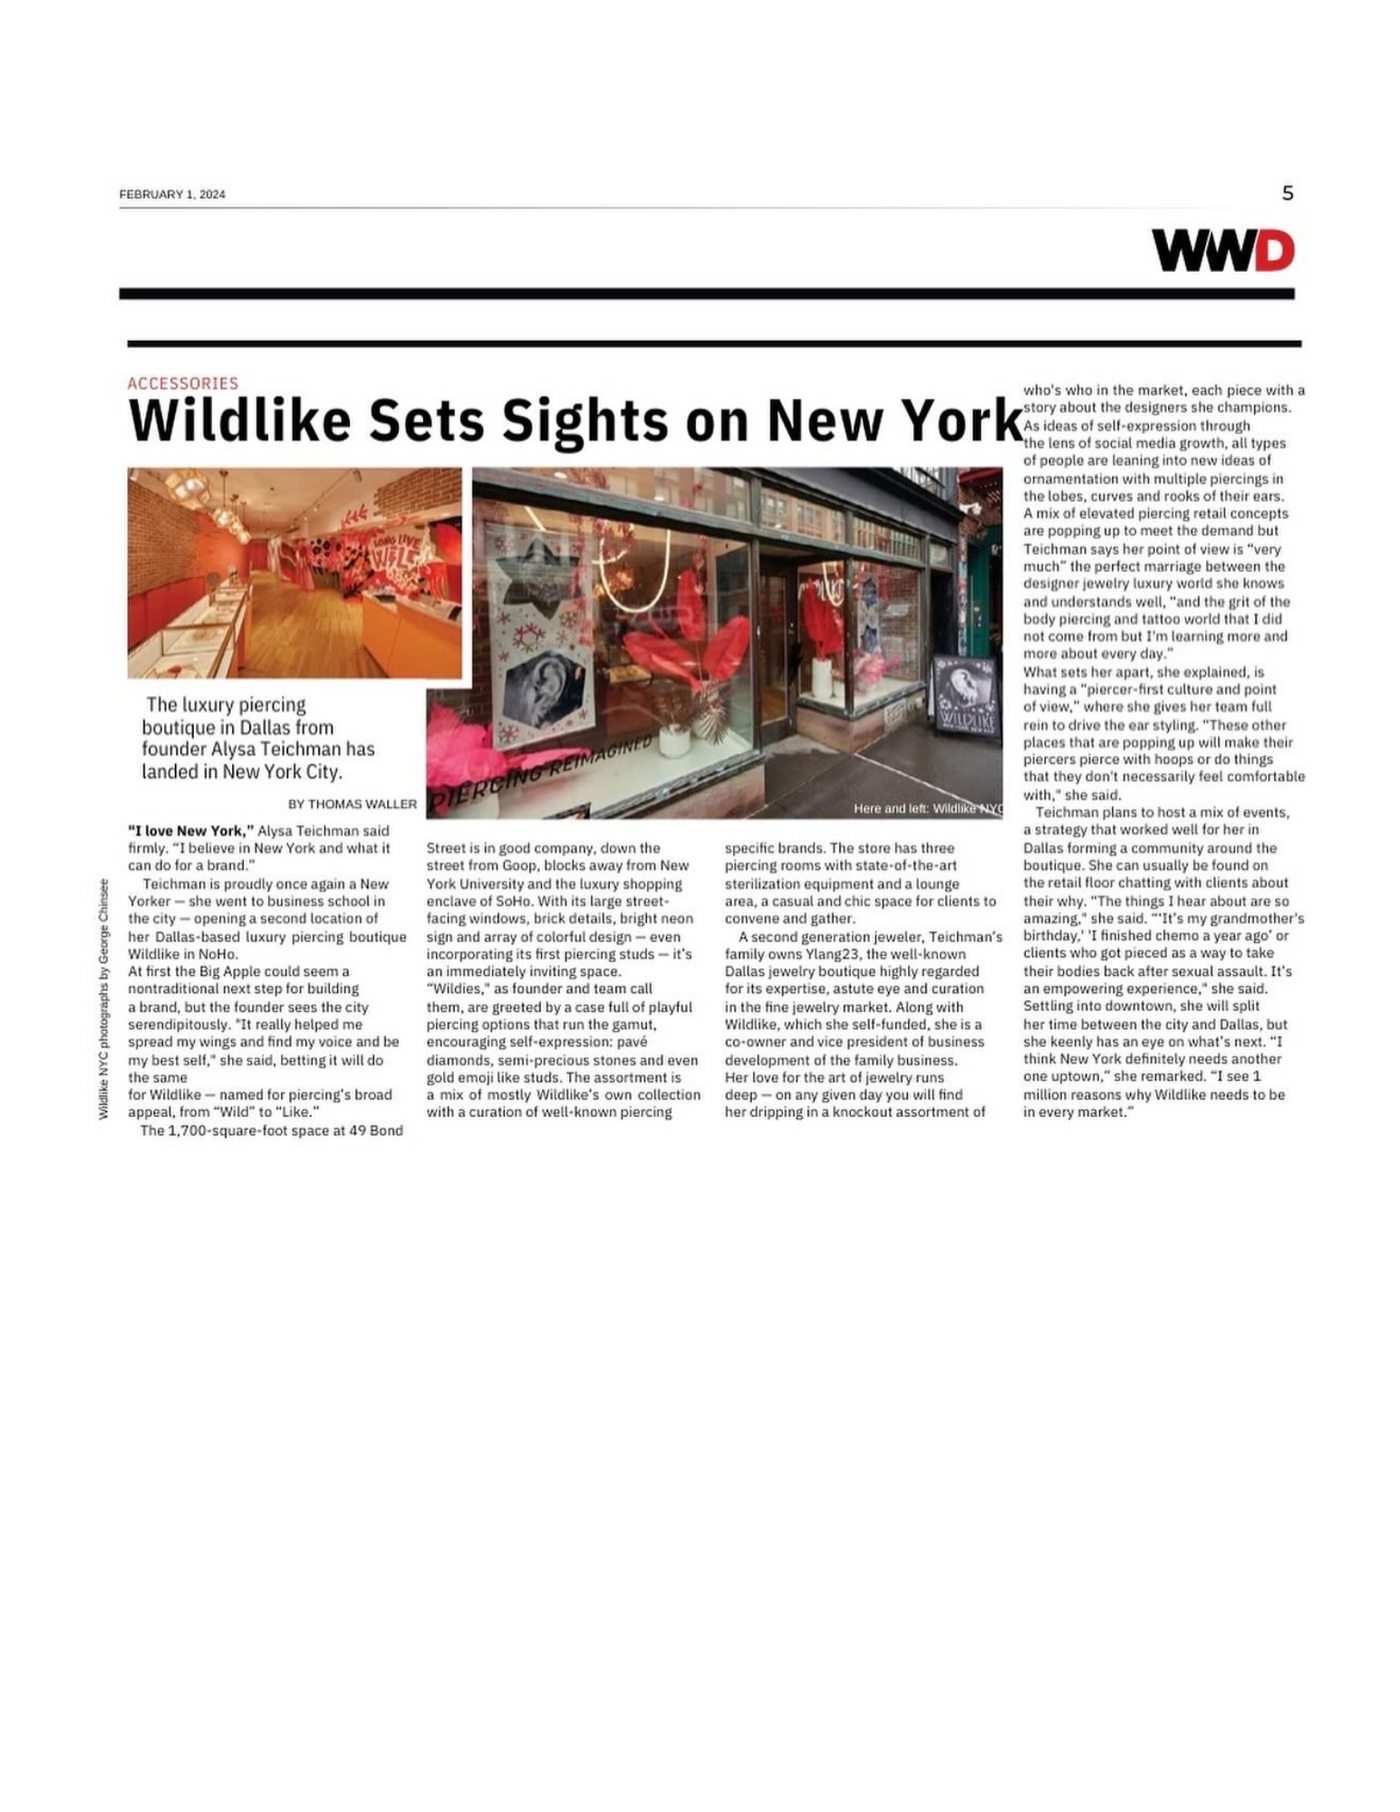 WWD: Wildlike Sets Sights on New York